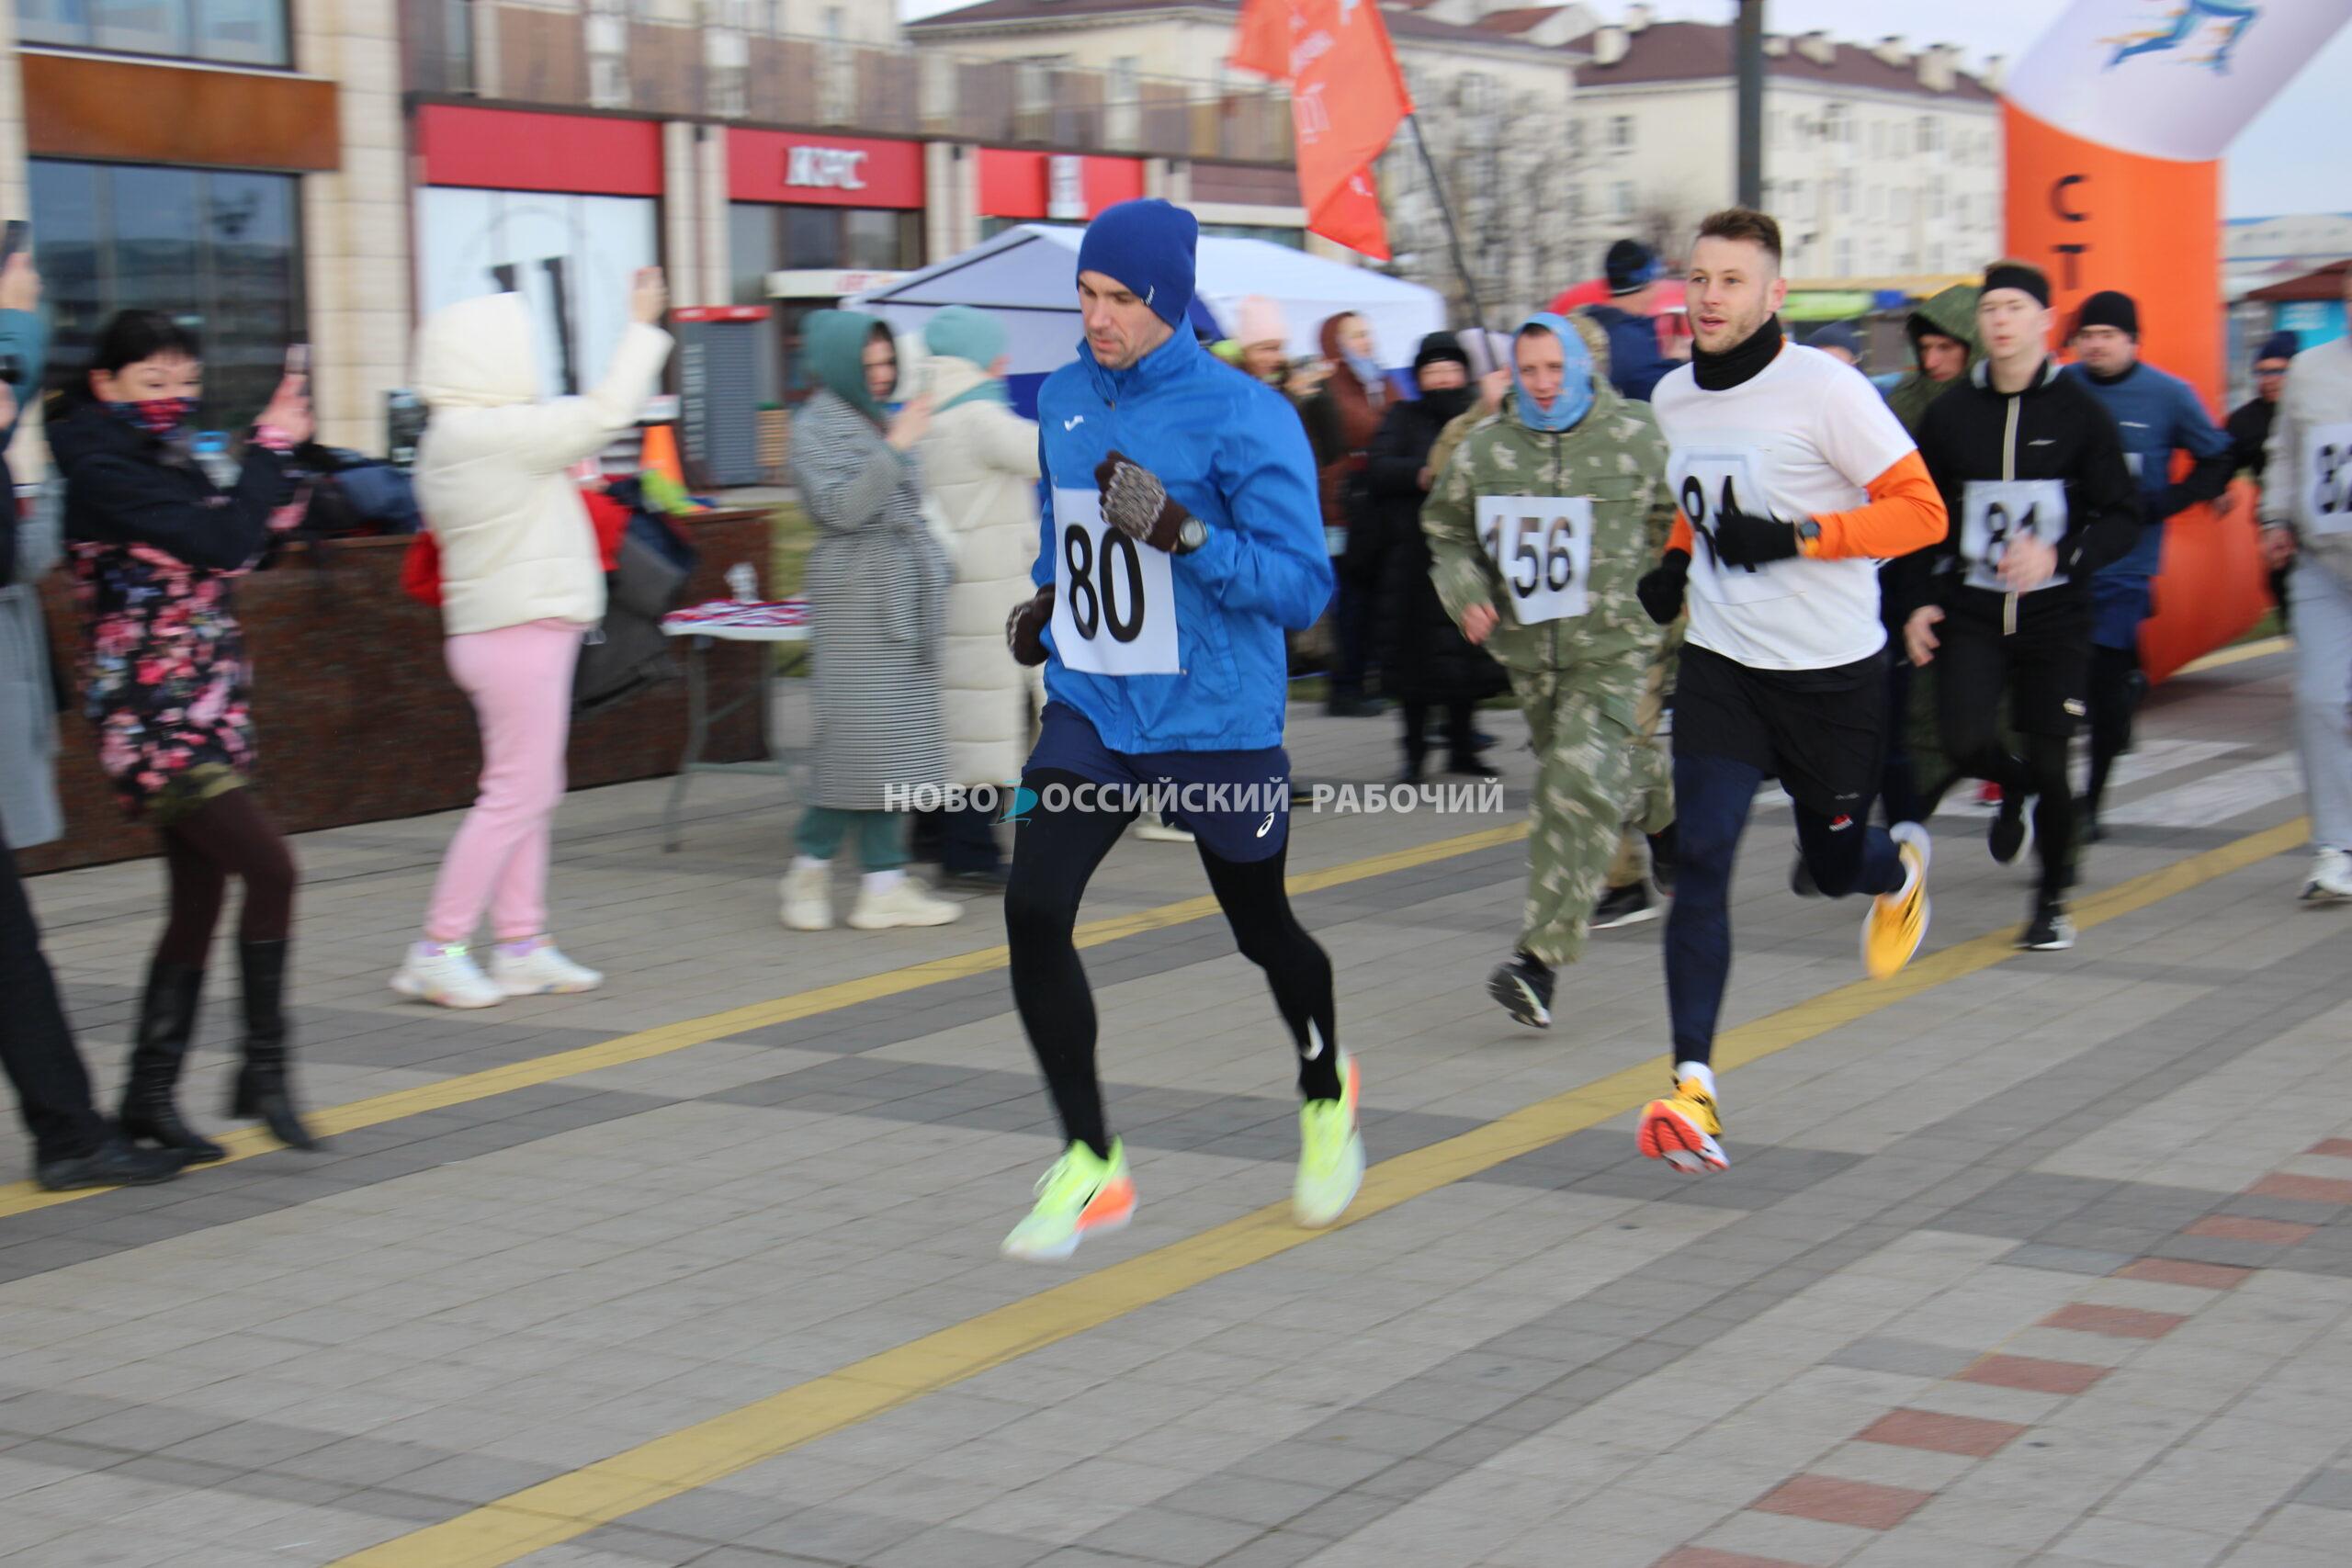 23 сотни метров в честь 23 февраля: в Новороссийске прошел «Zабег мужества»